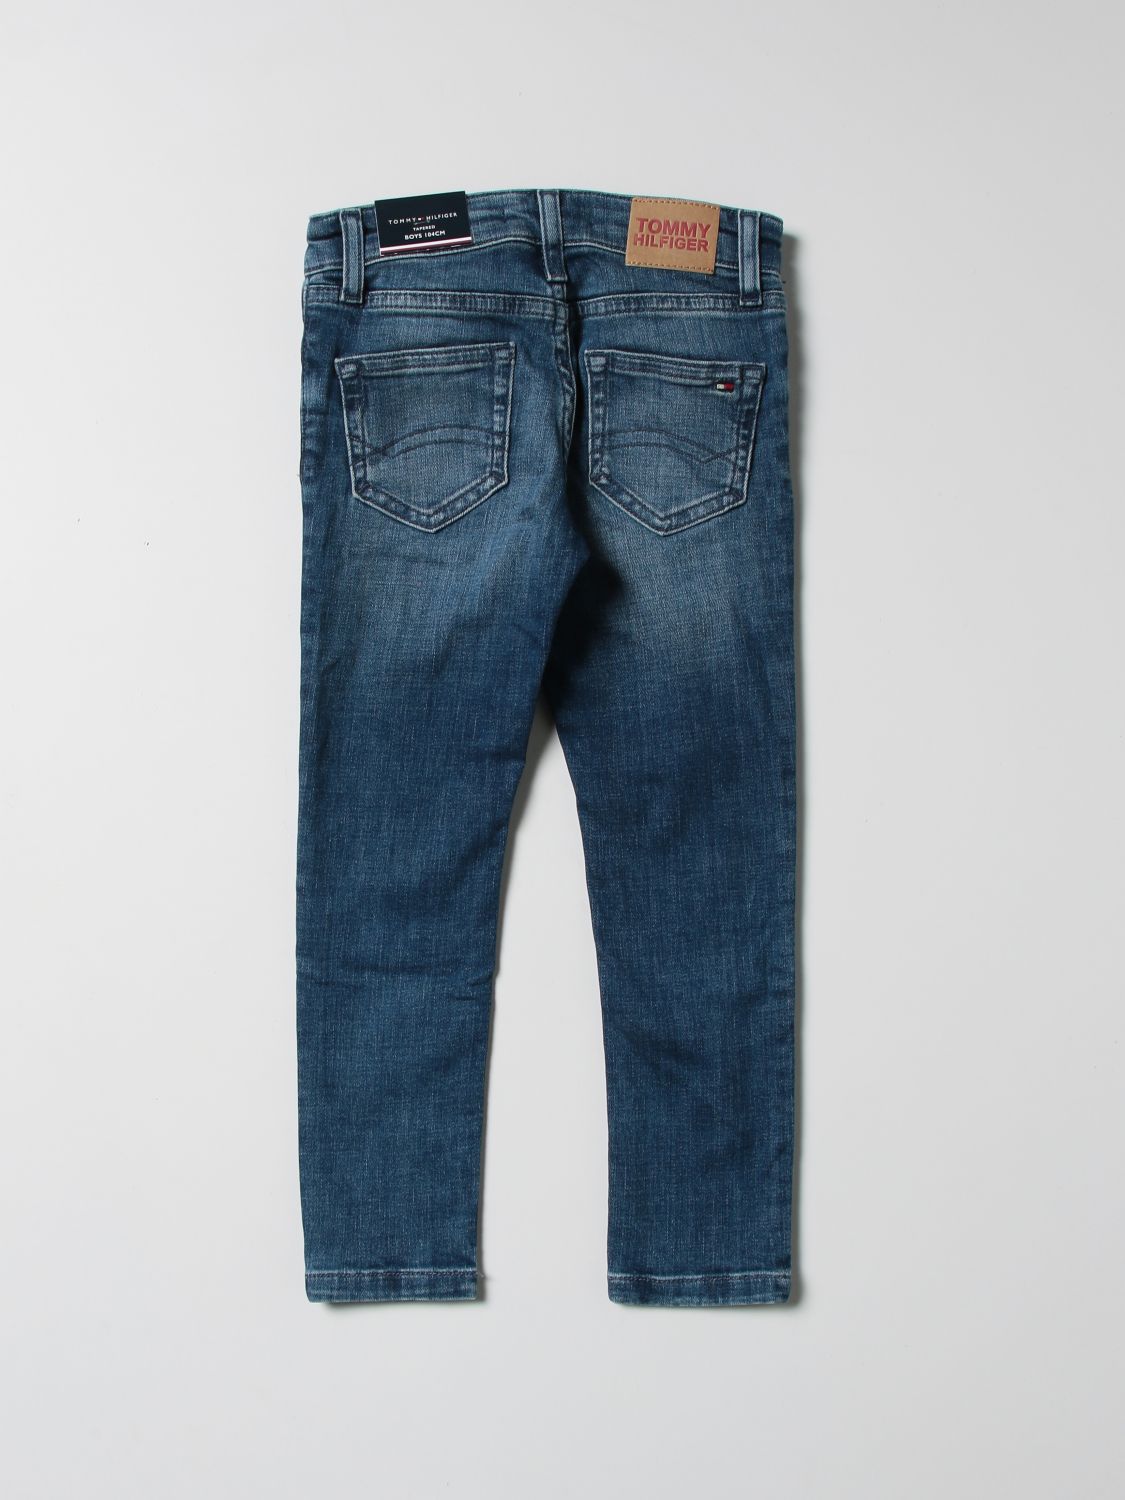 Jeans Tommy Hilfiger: Tommy Hilfiger 5-pocket jeans blue 2